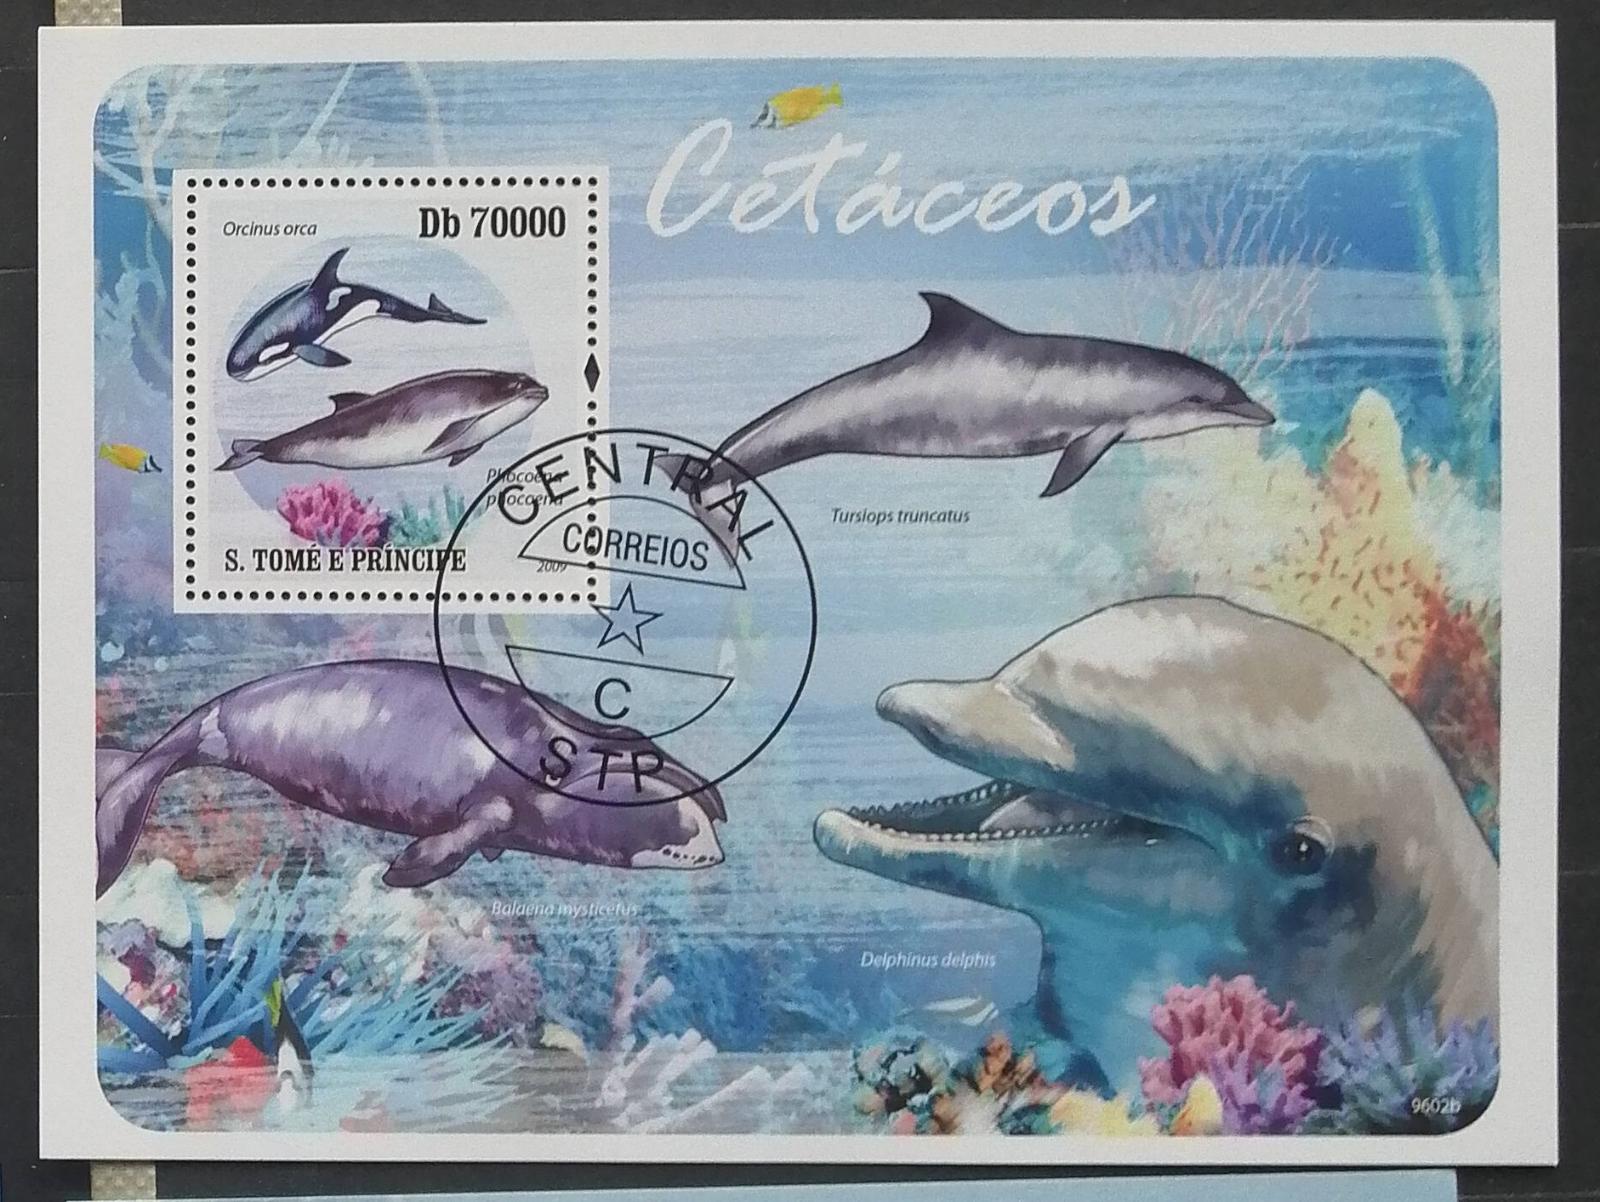 S. Tomé e Príncipe 2009 - CTO aršík, vodné cicavce, delfíny, ryby - Tematické známky